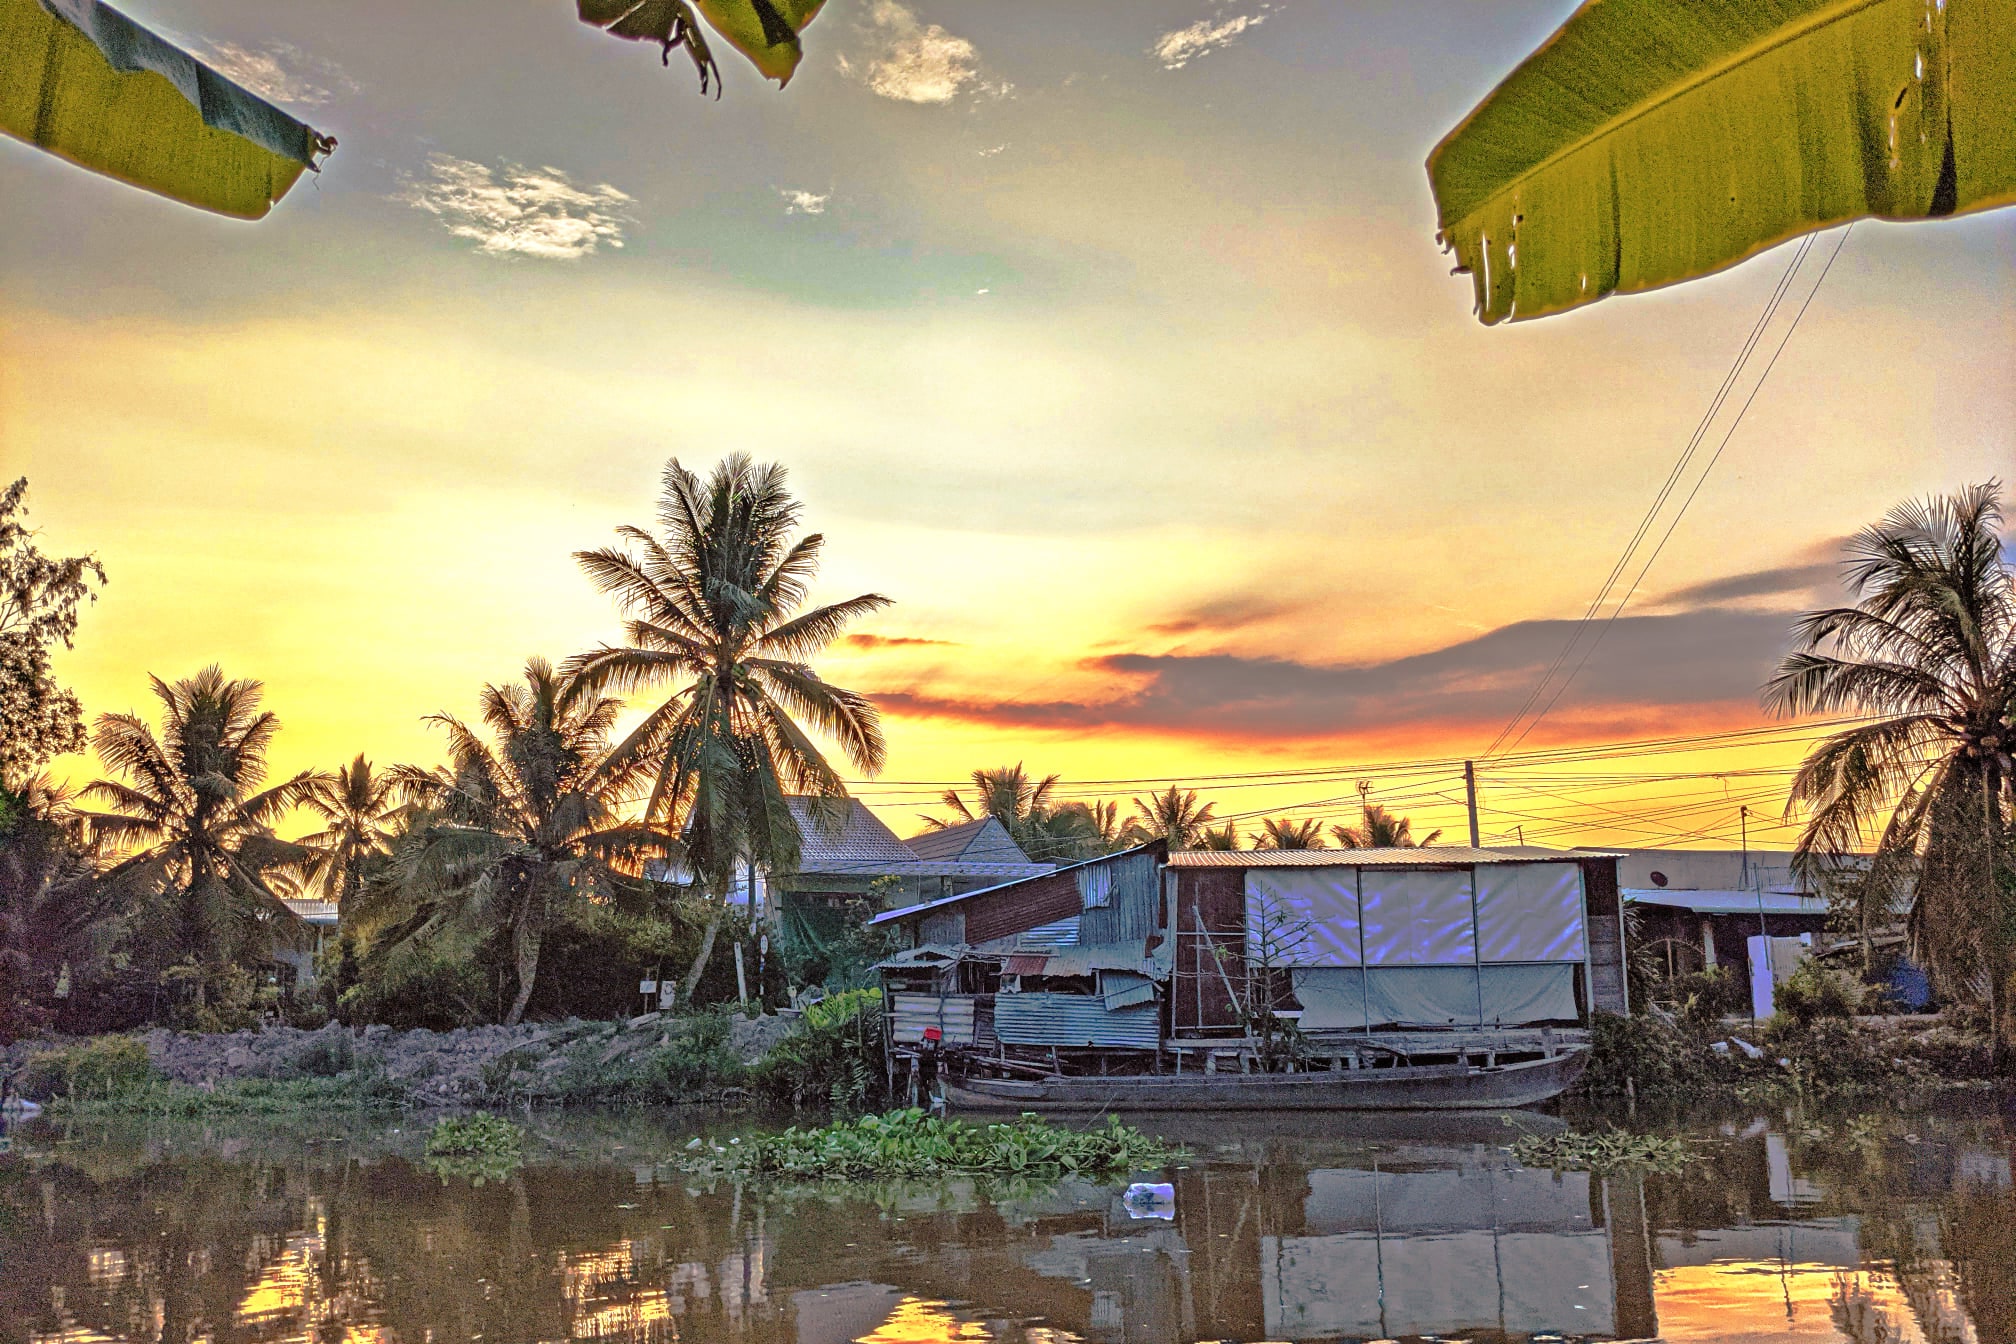 Nền Cây Dừa Phản Chiếu Mùa Hè Dưới Bầu Trời đỏ Hình Nền Cho Tải Về Miễn Phí  - Pngtree